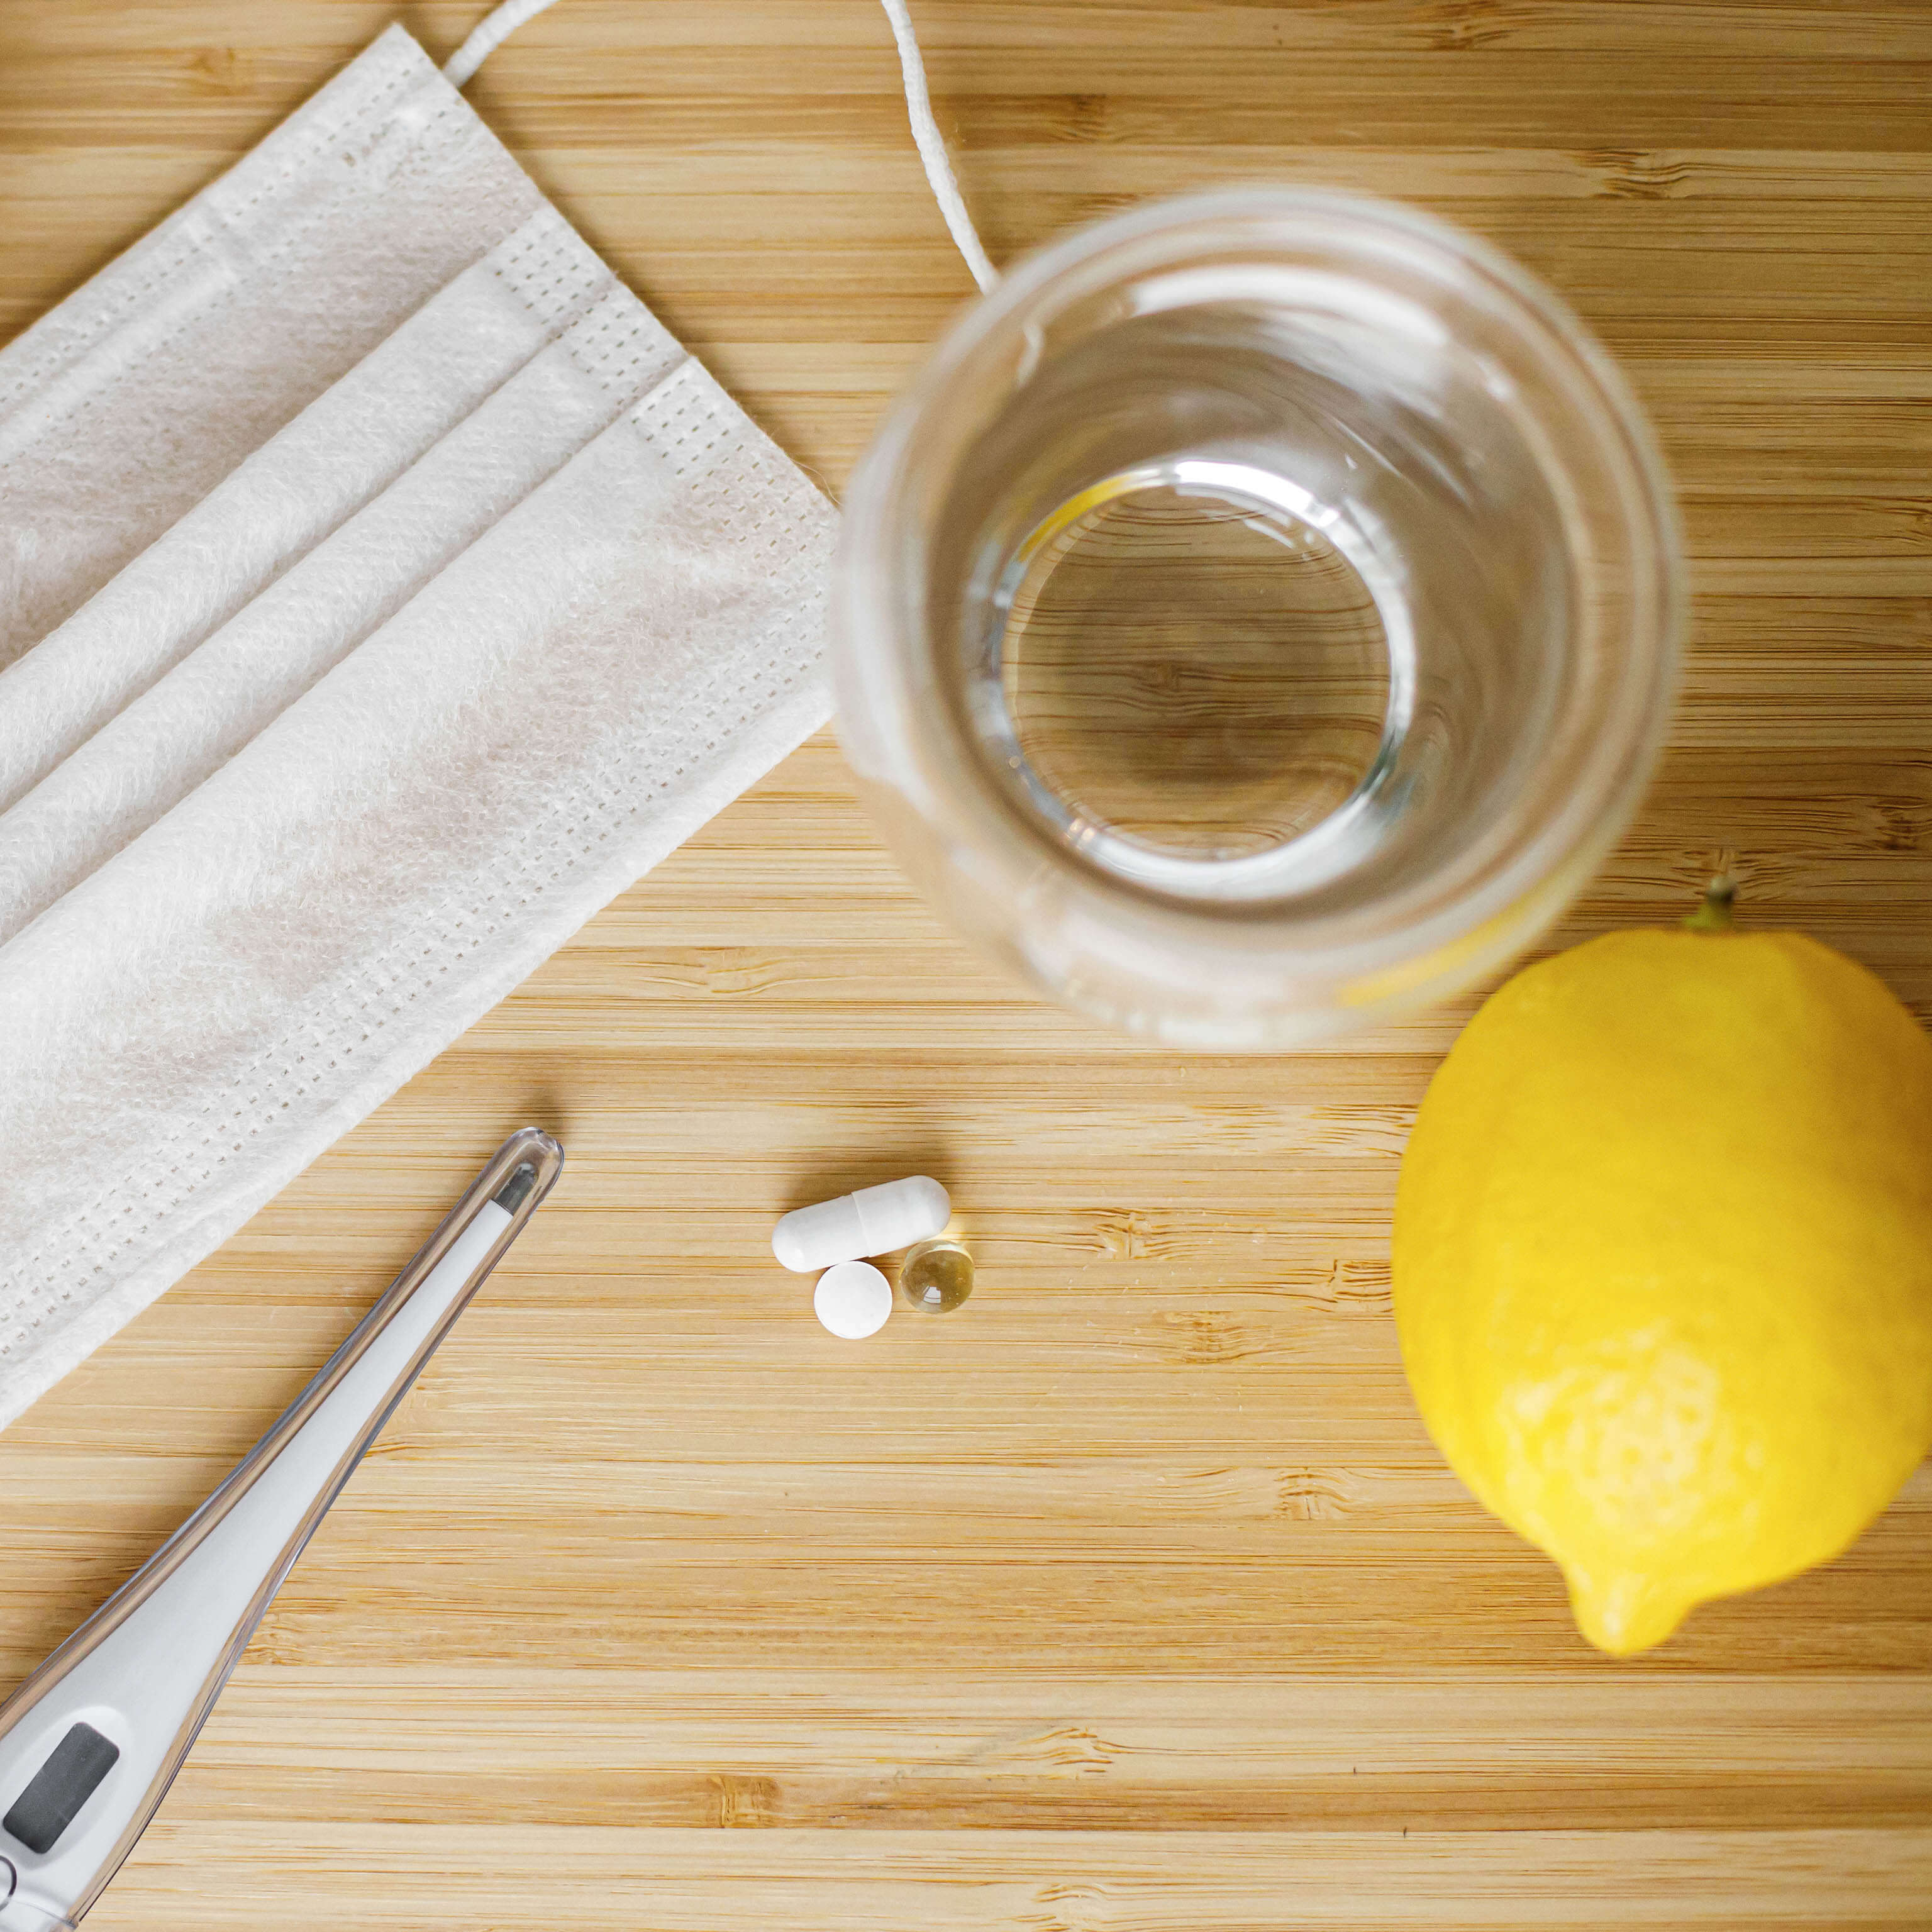 Zitrone neben einem Glas Wasser, Tabletten und einer Atemmaske